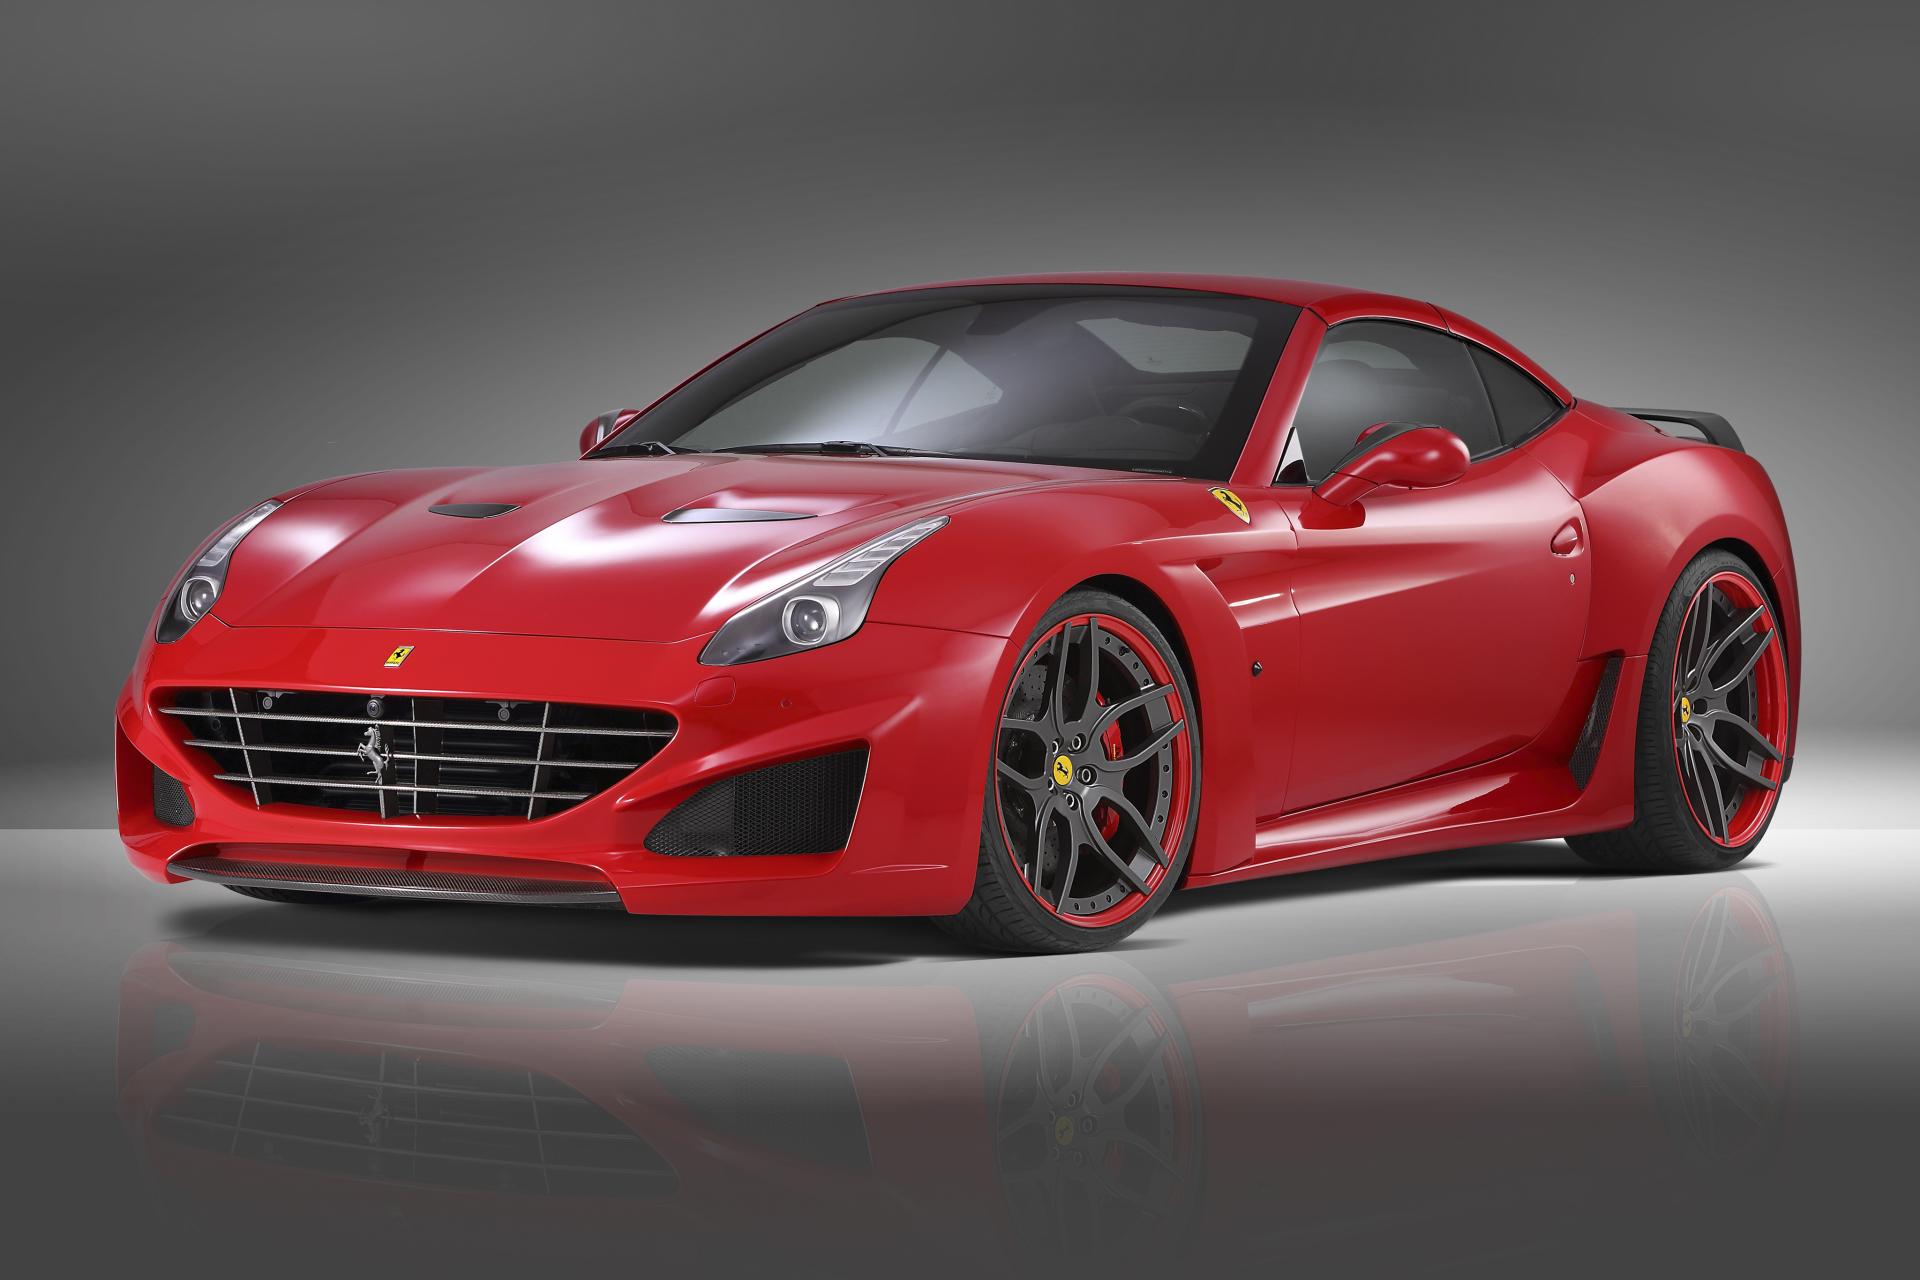 Ferrari California T N-Largo at 1024 x 1024 iPad size wallpapers HD quality